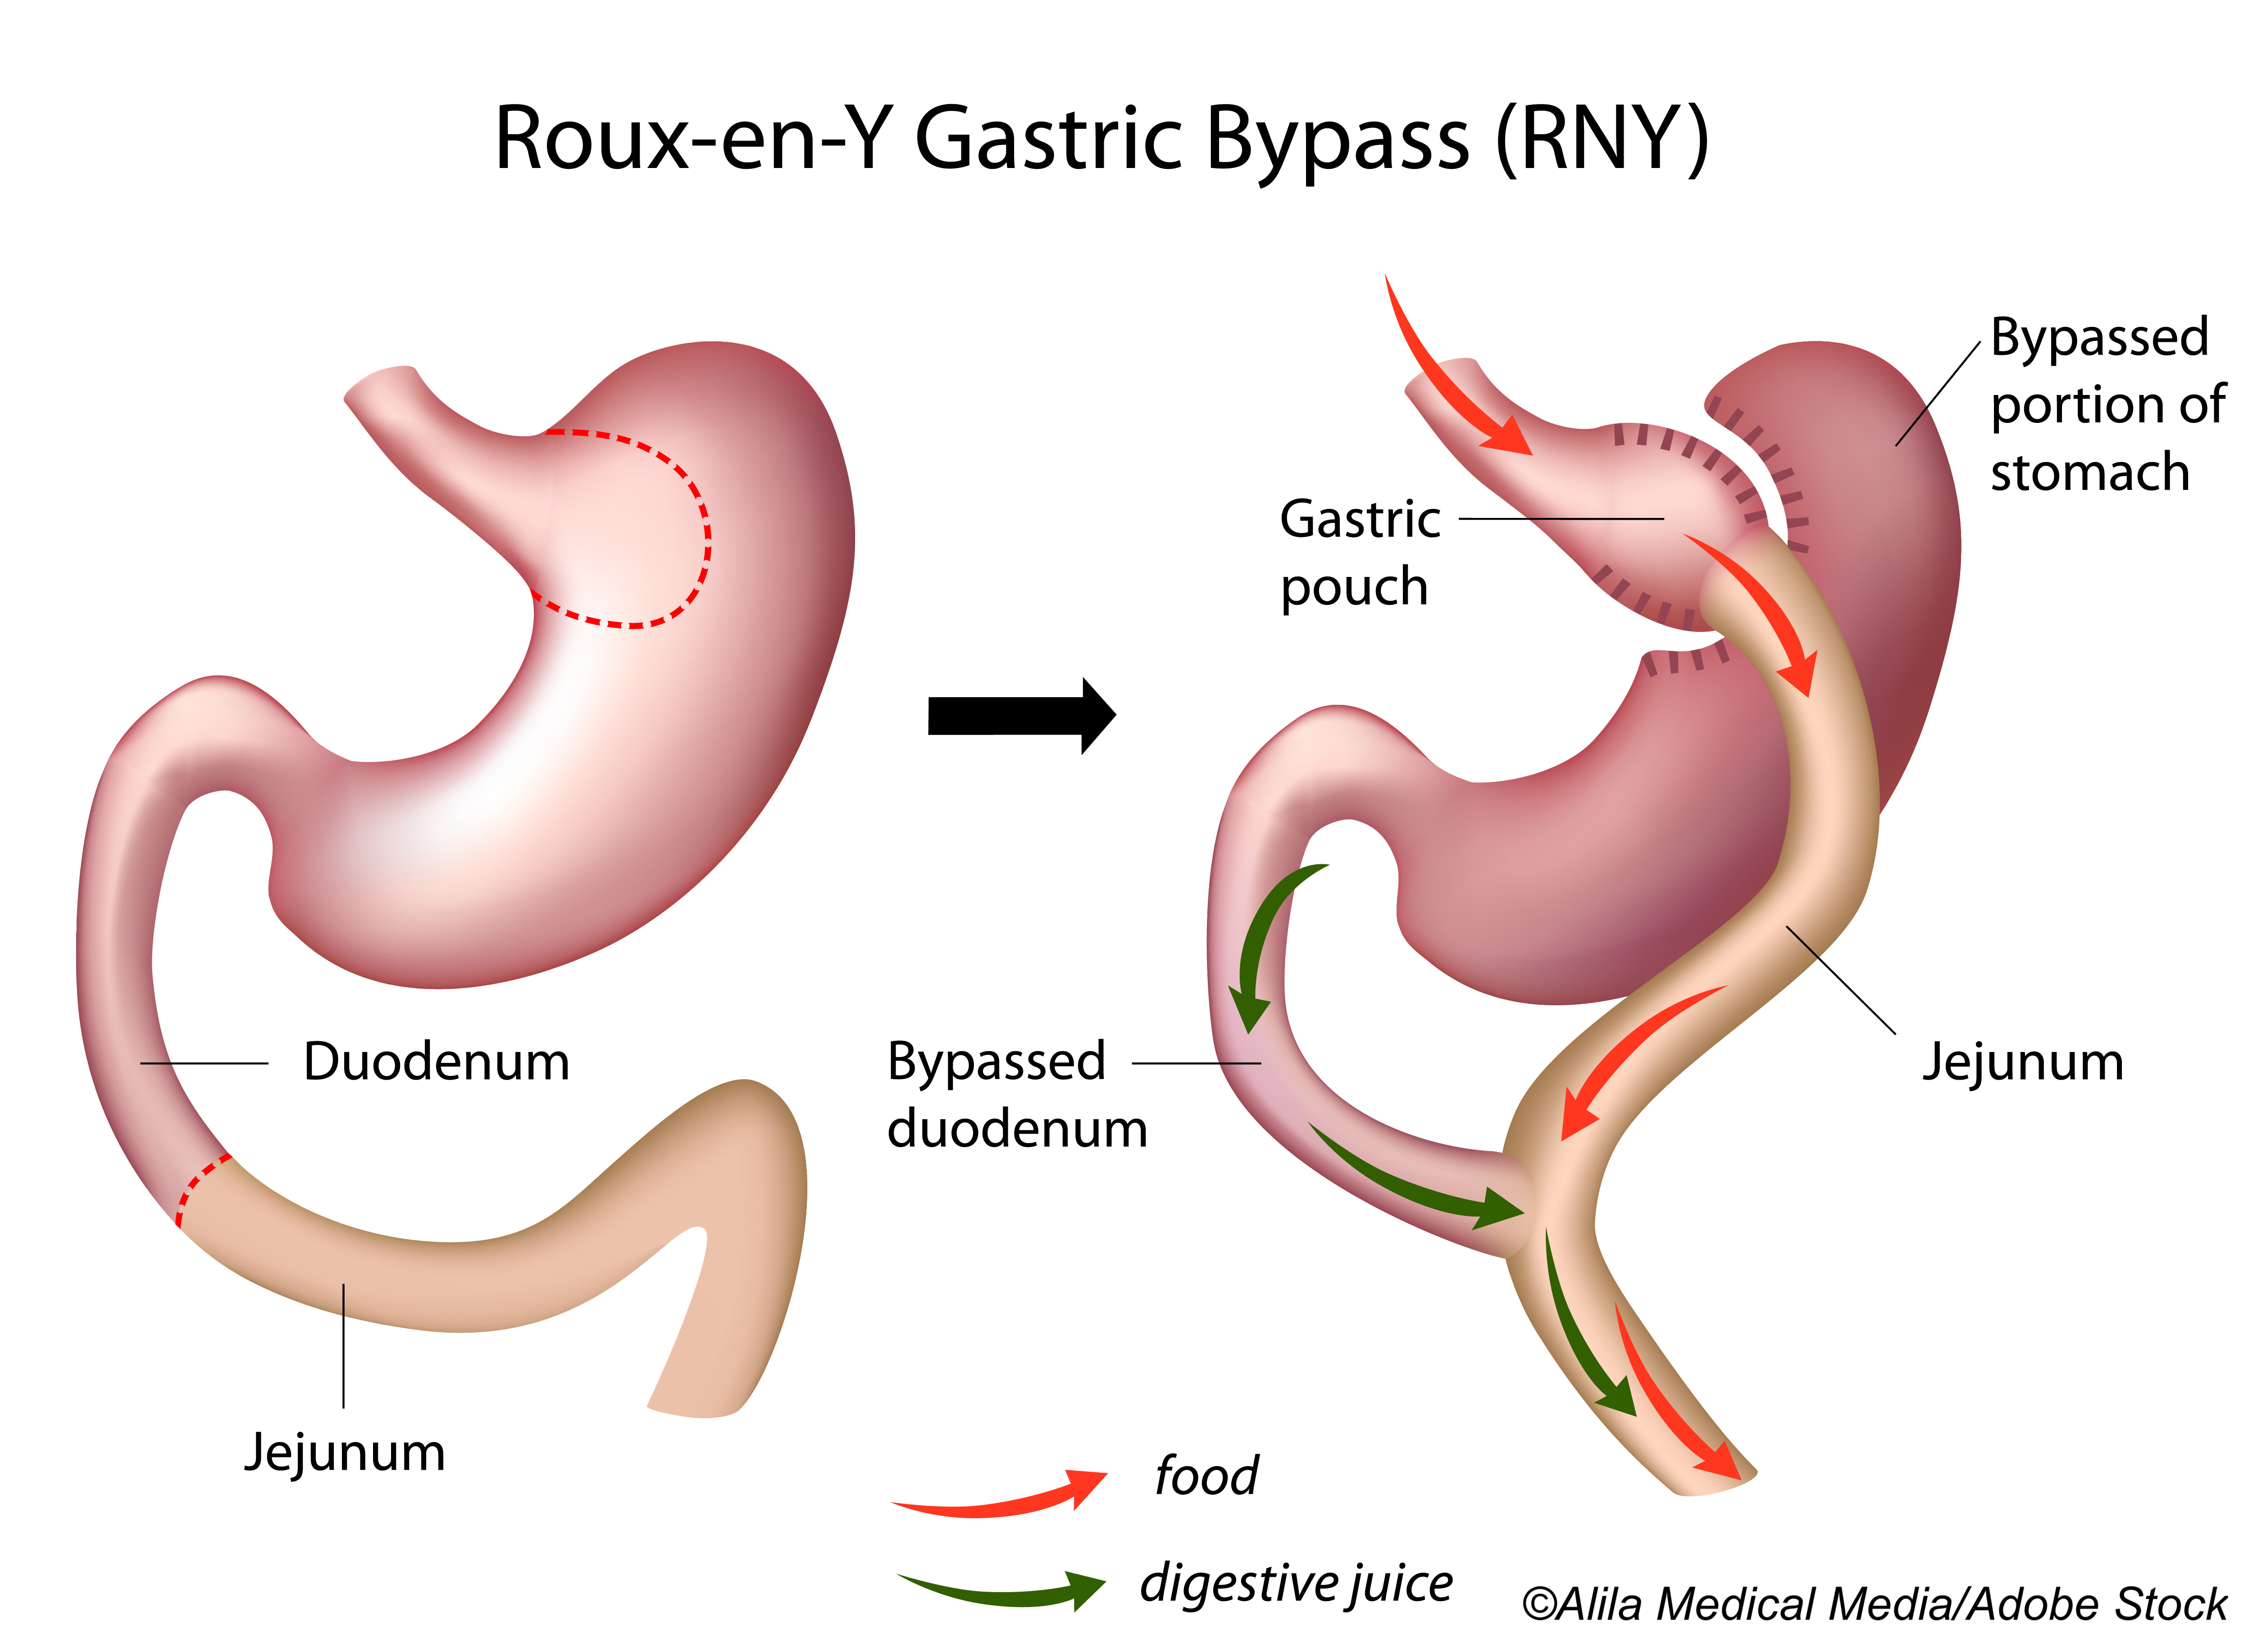 Sleeve Gastrectomy, Roux-en-Y Both Improve Hepatic Steatosis in Type 2 Diabetes